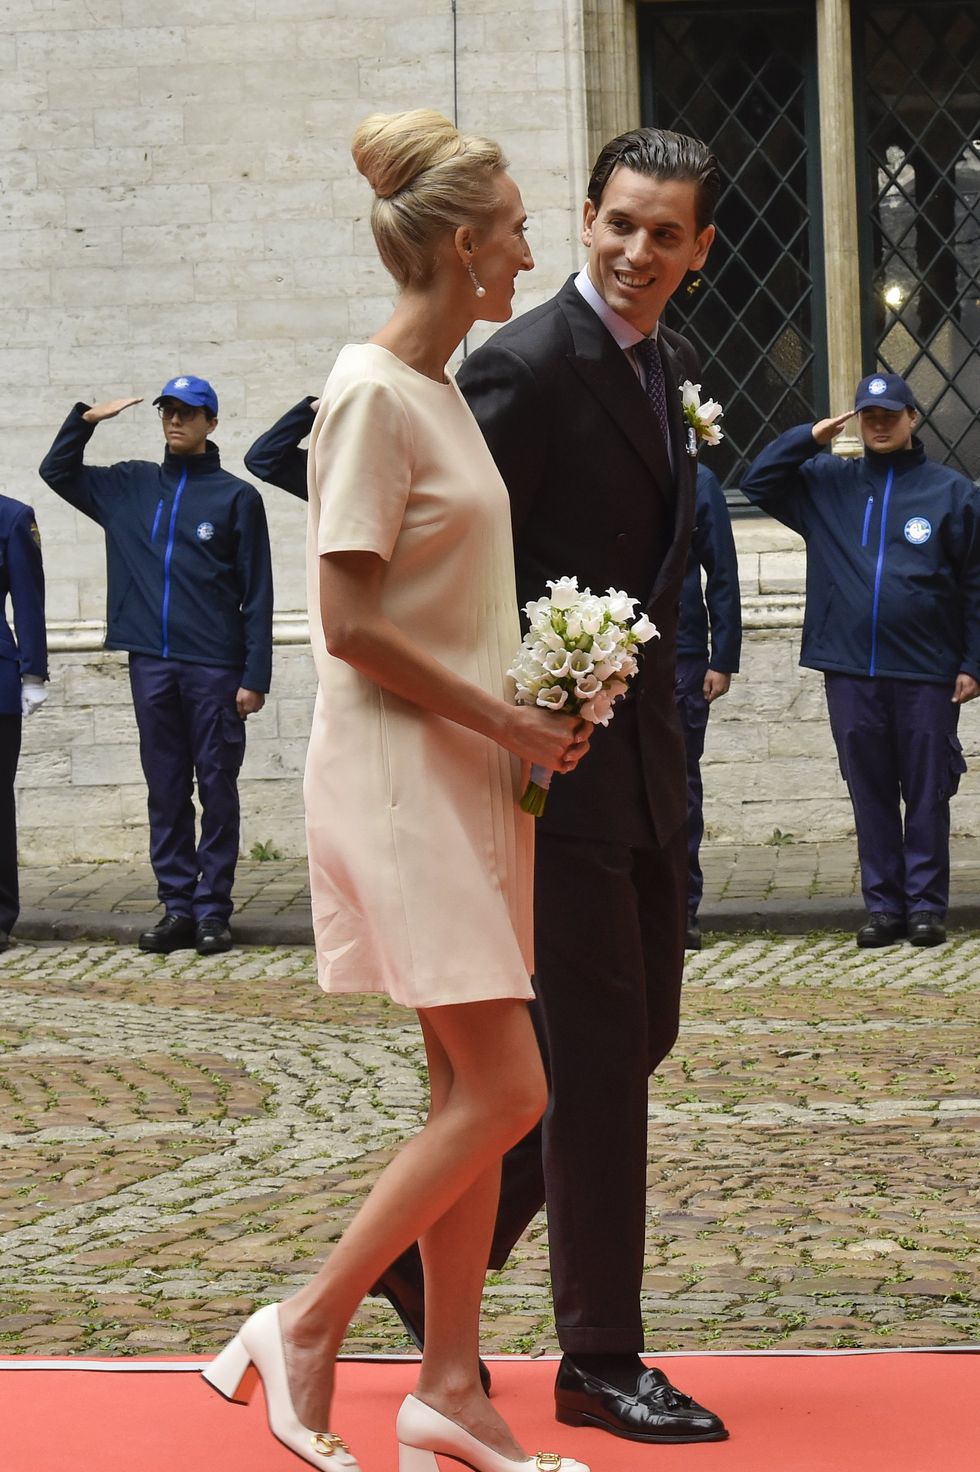 civil wedding of hrh princess maria laura of belgium and mr william isvy